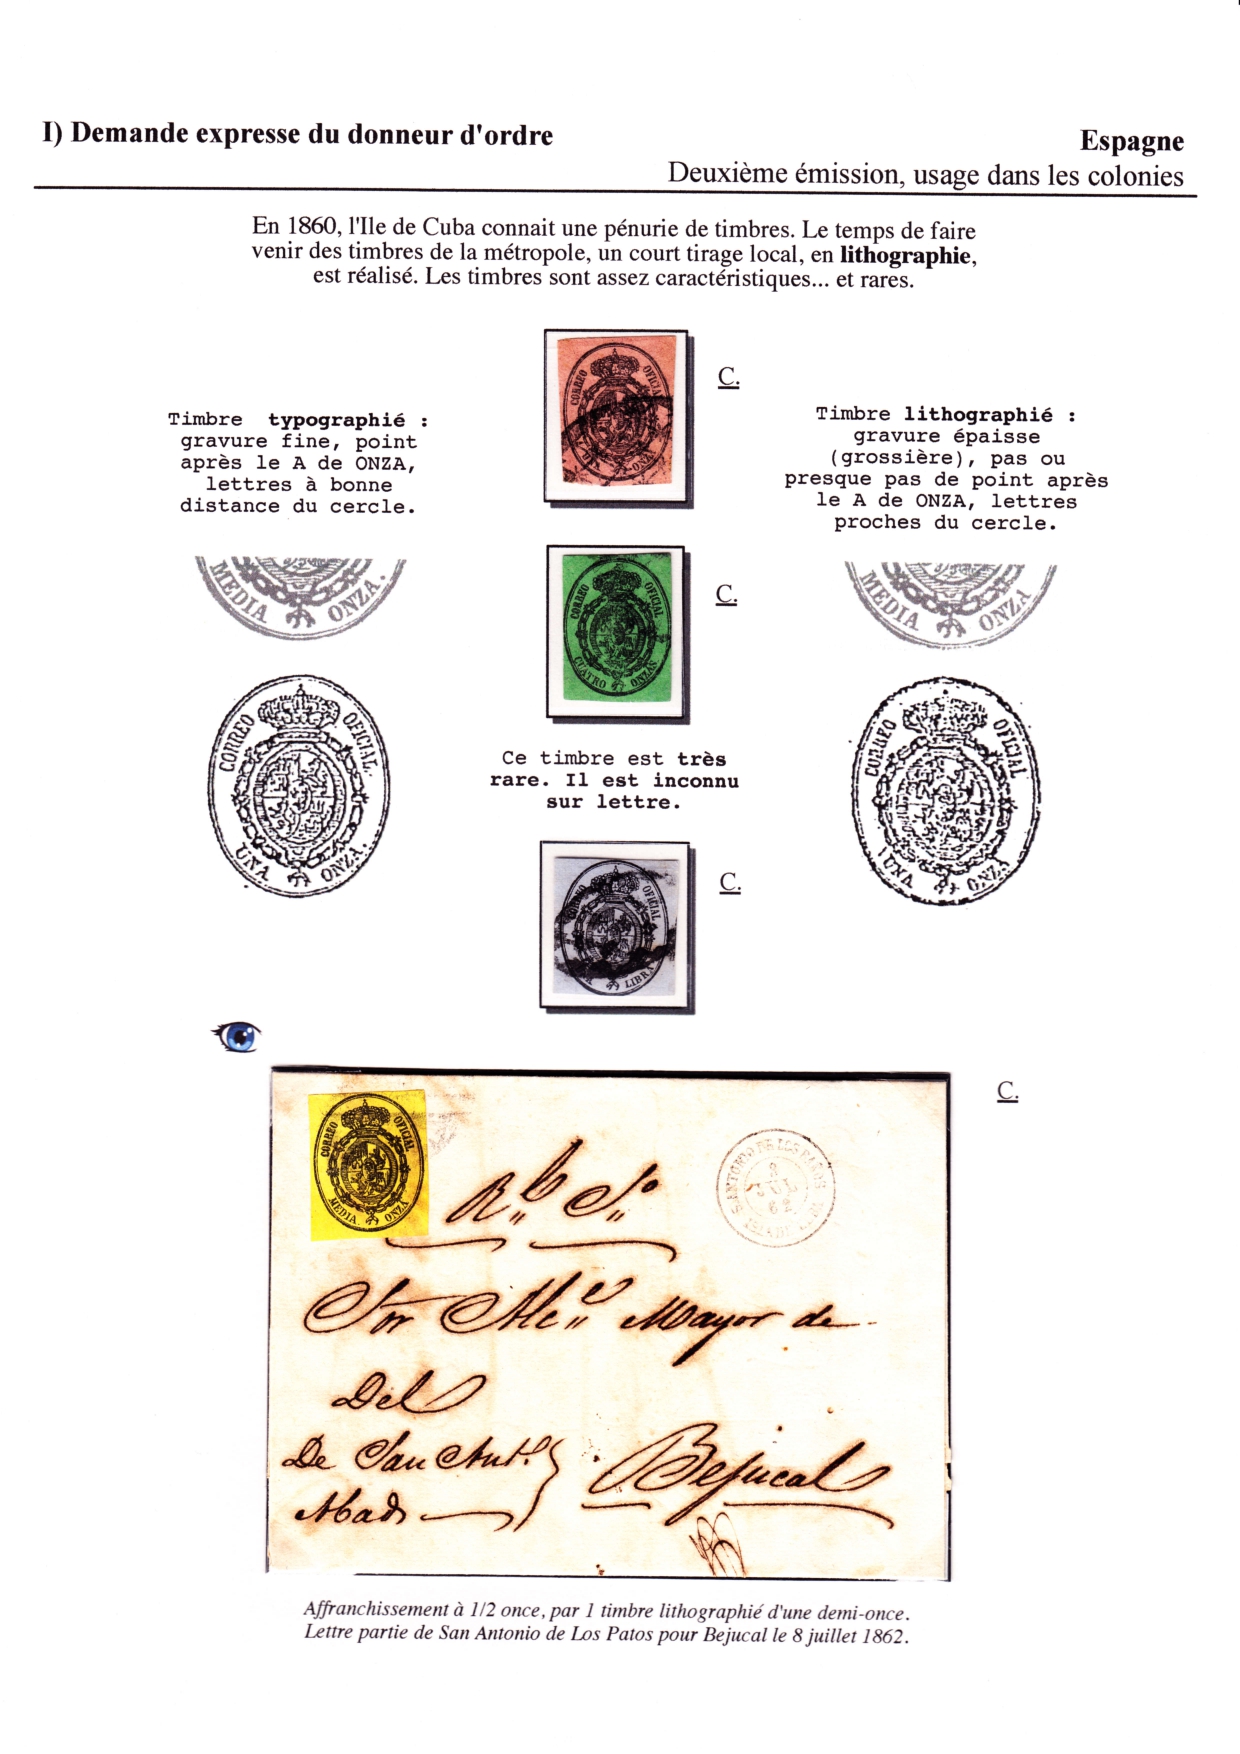 Les débuts des timbres sans valeur faciale apparente p. 9